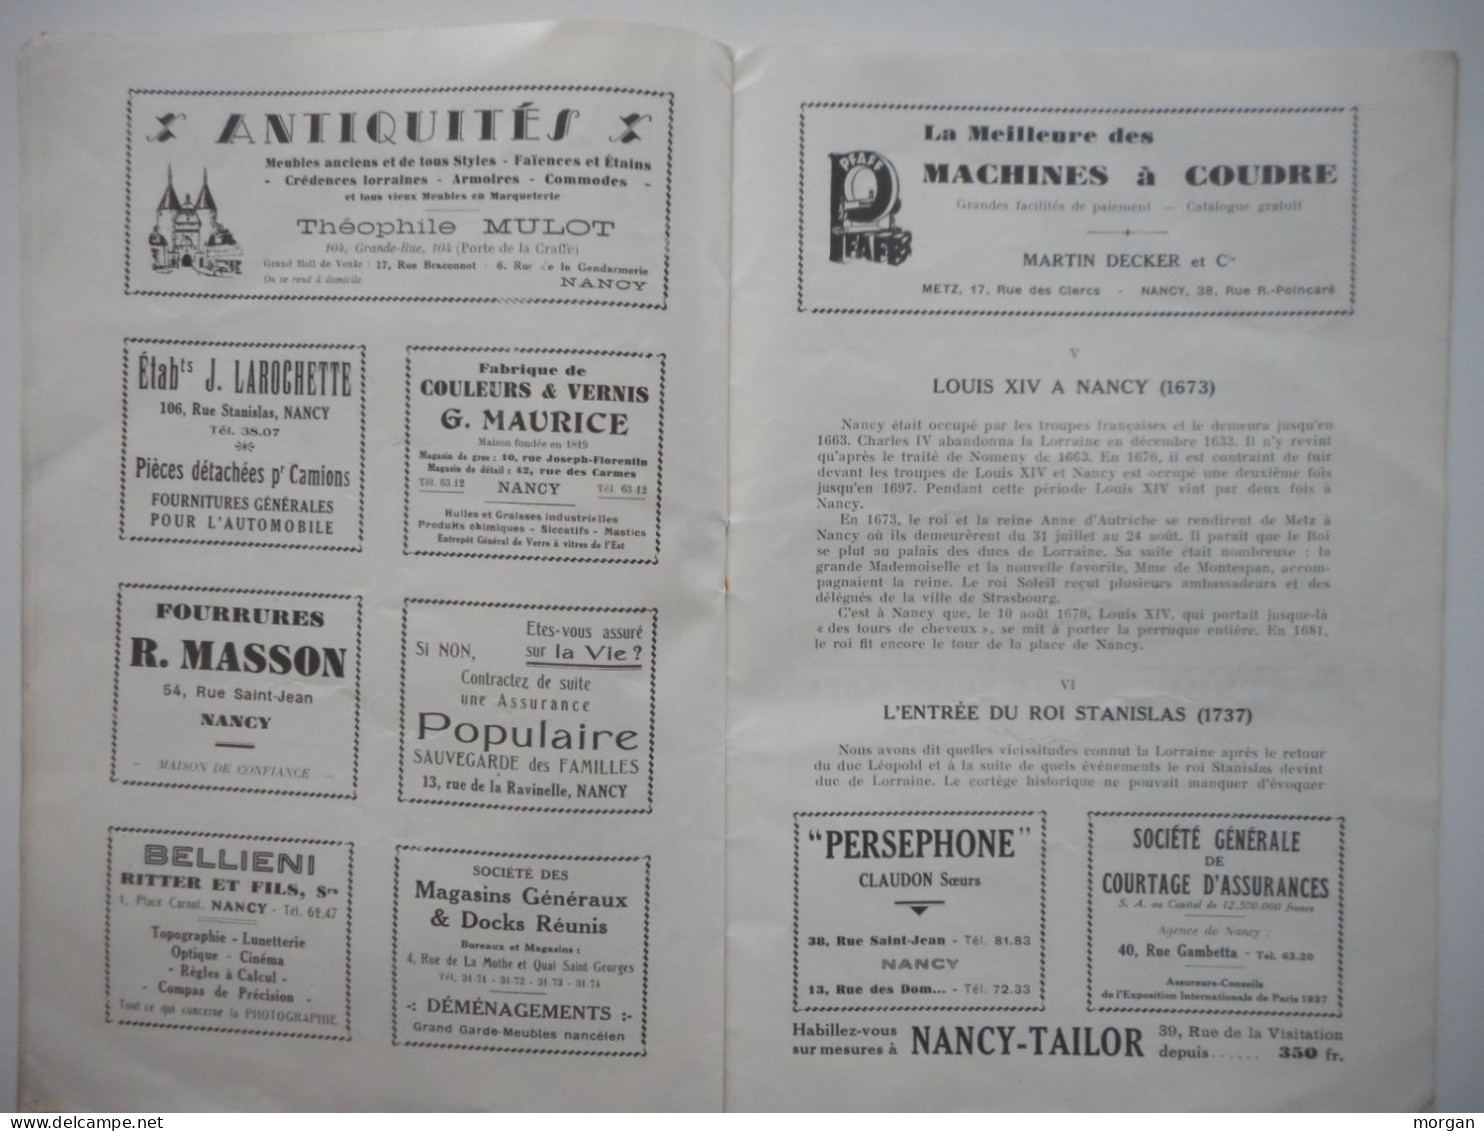 NANCY, 1937, PROGRAMME DU DEFILE HISTORIQUE DU BICENTENAIRE DU RATTACHEMENT DE LA LORRAINE A LA FRANCE